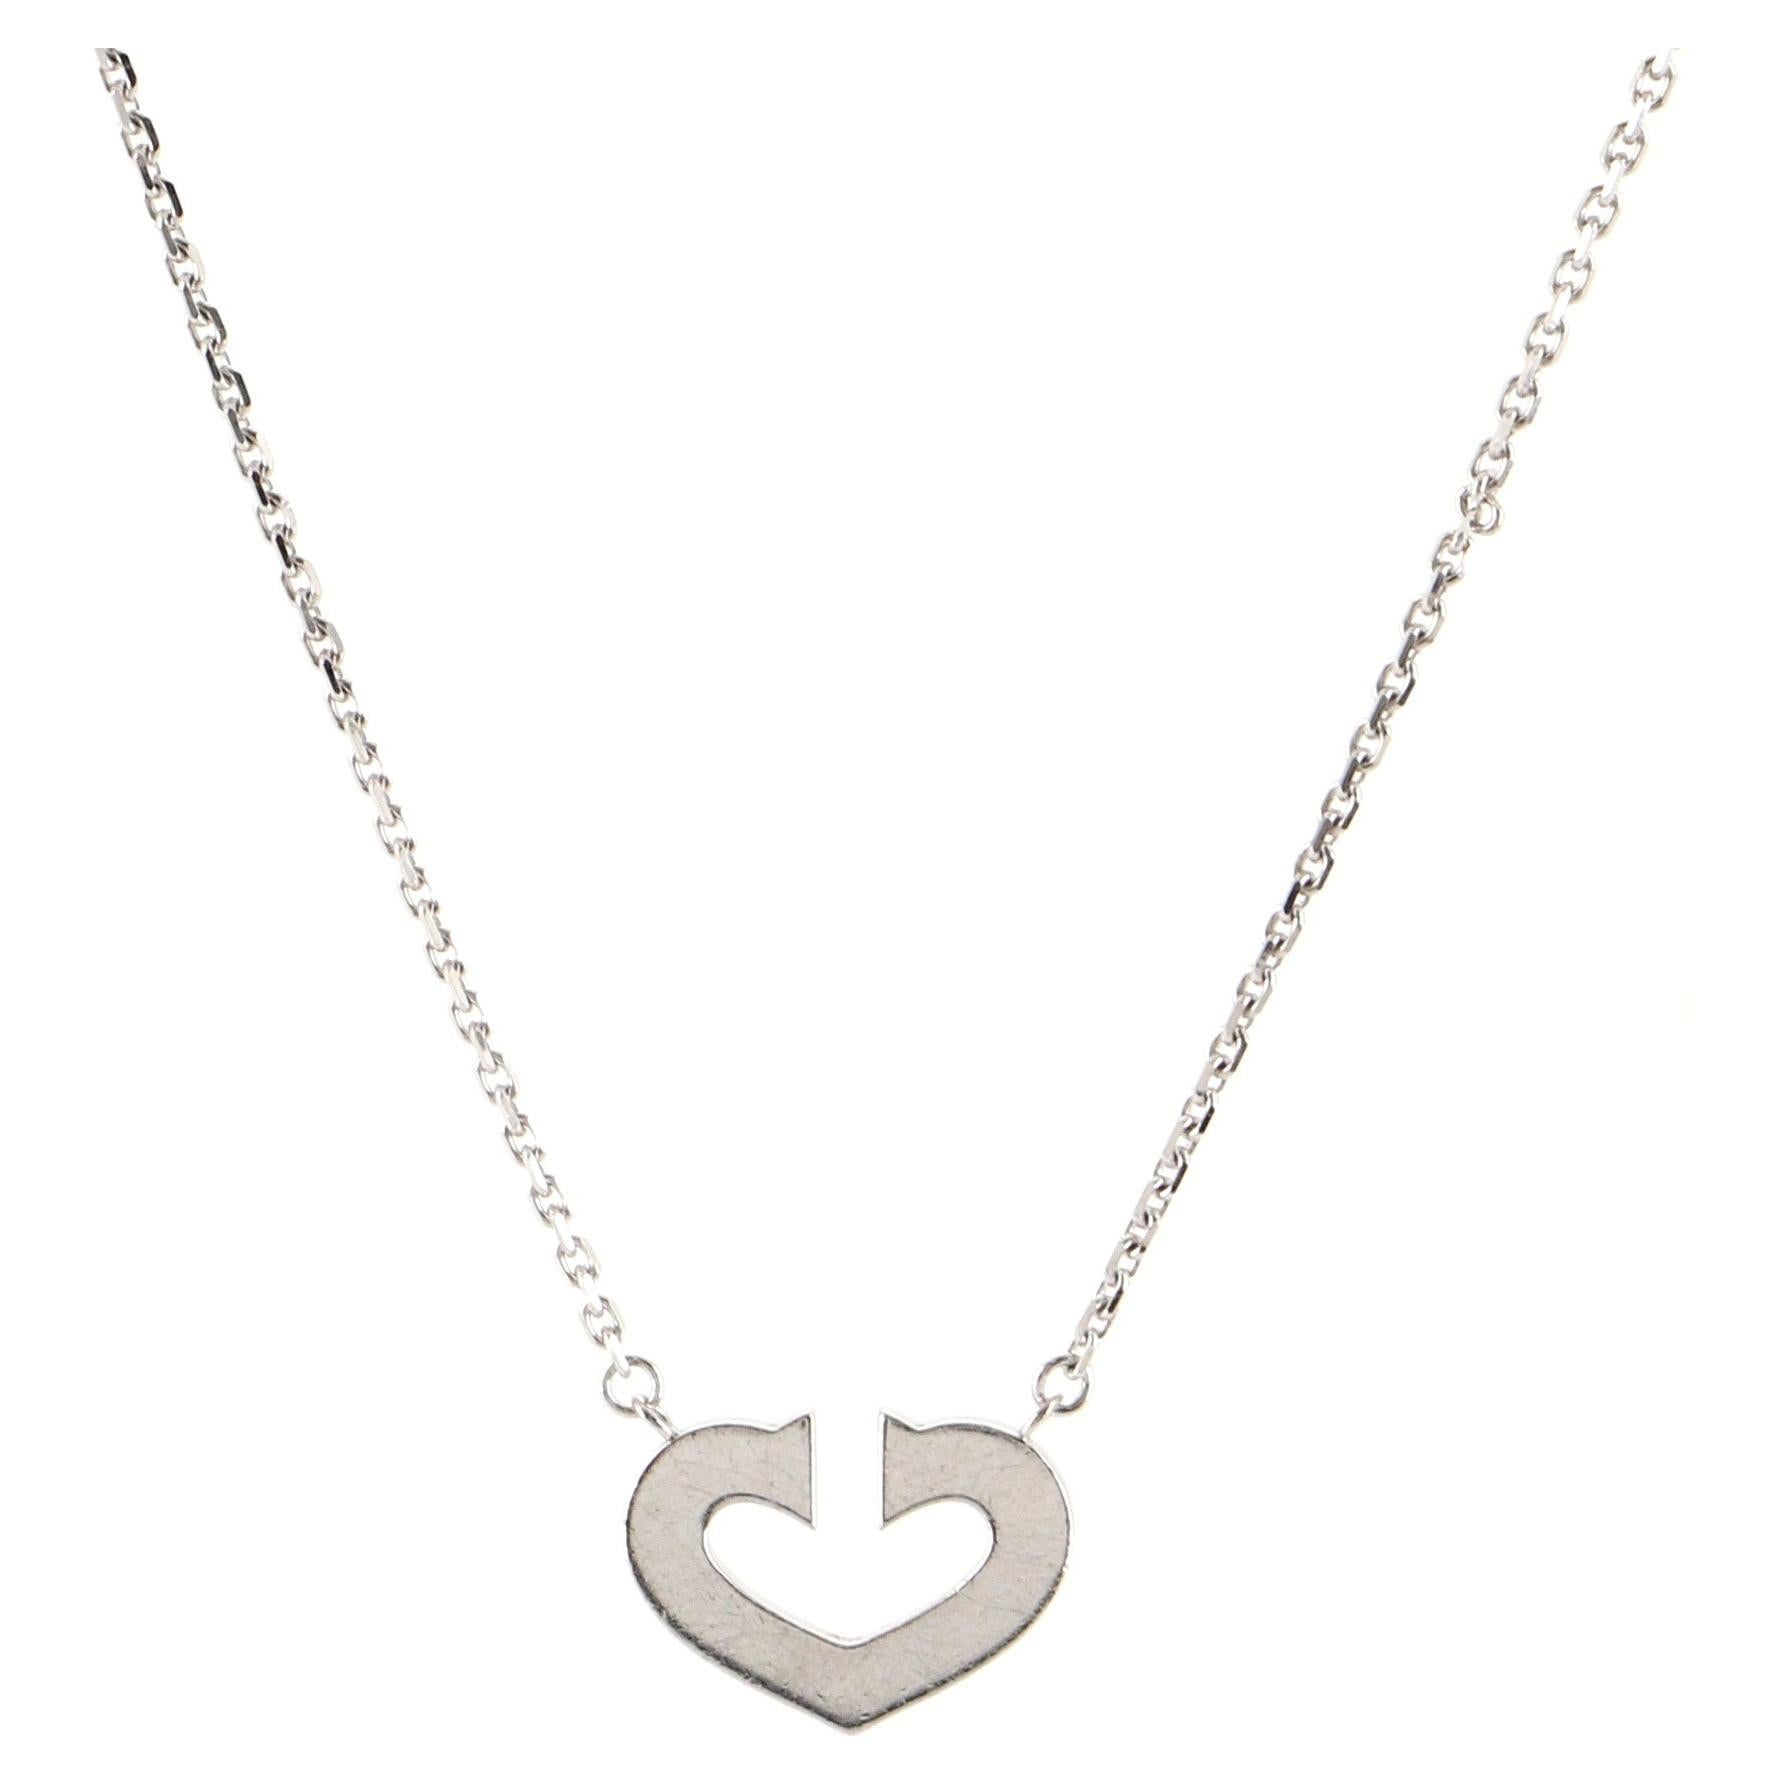 Cartier C Heart de Cartier Pendant Necklace 18K White Gold